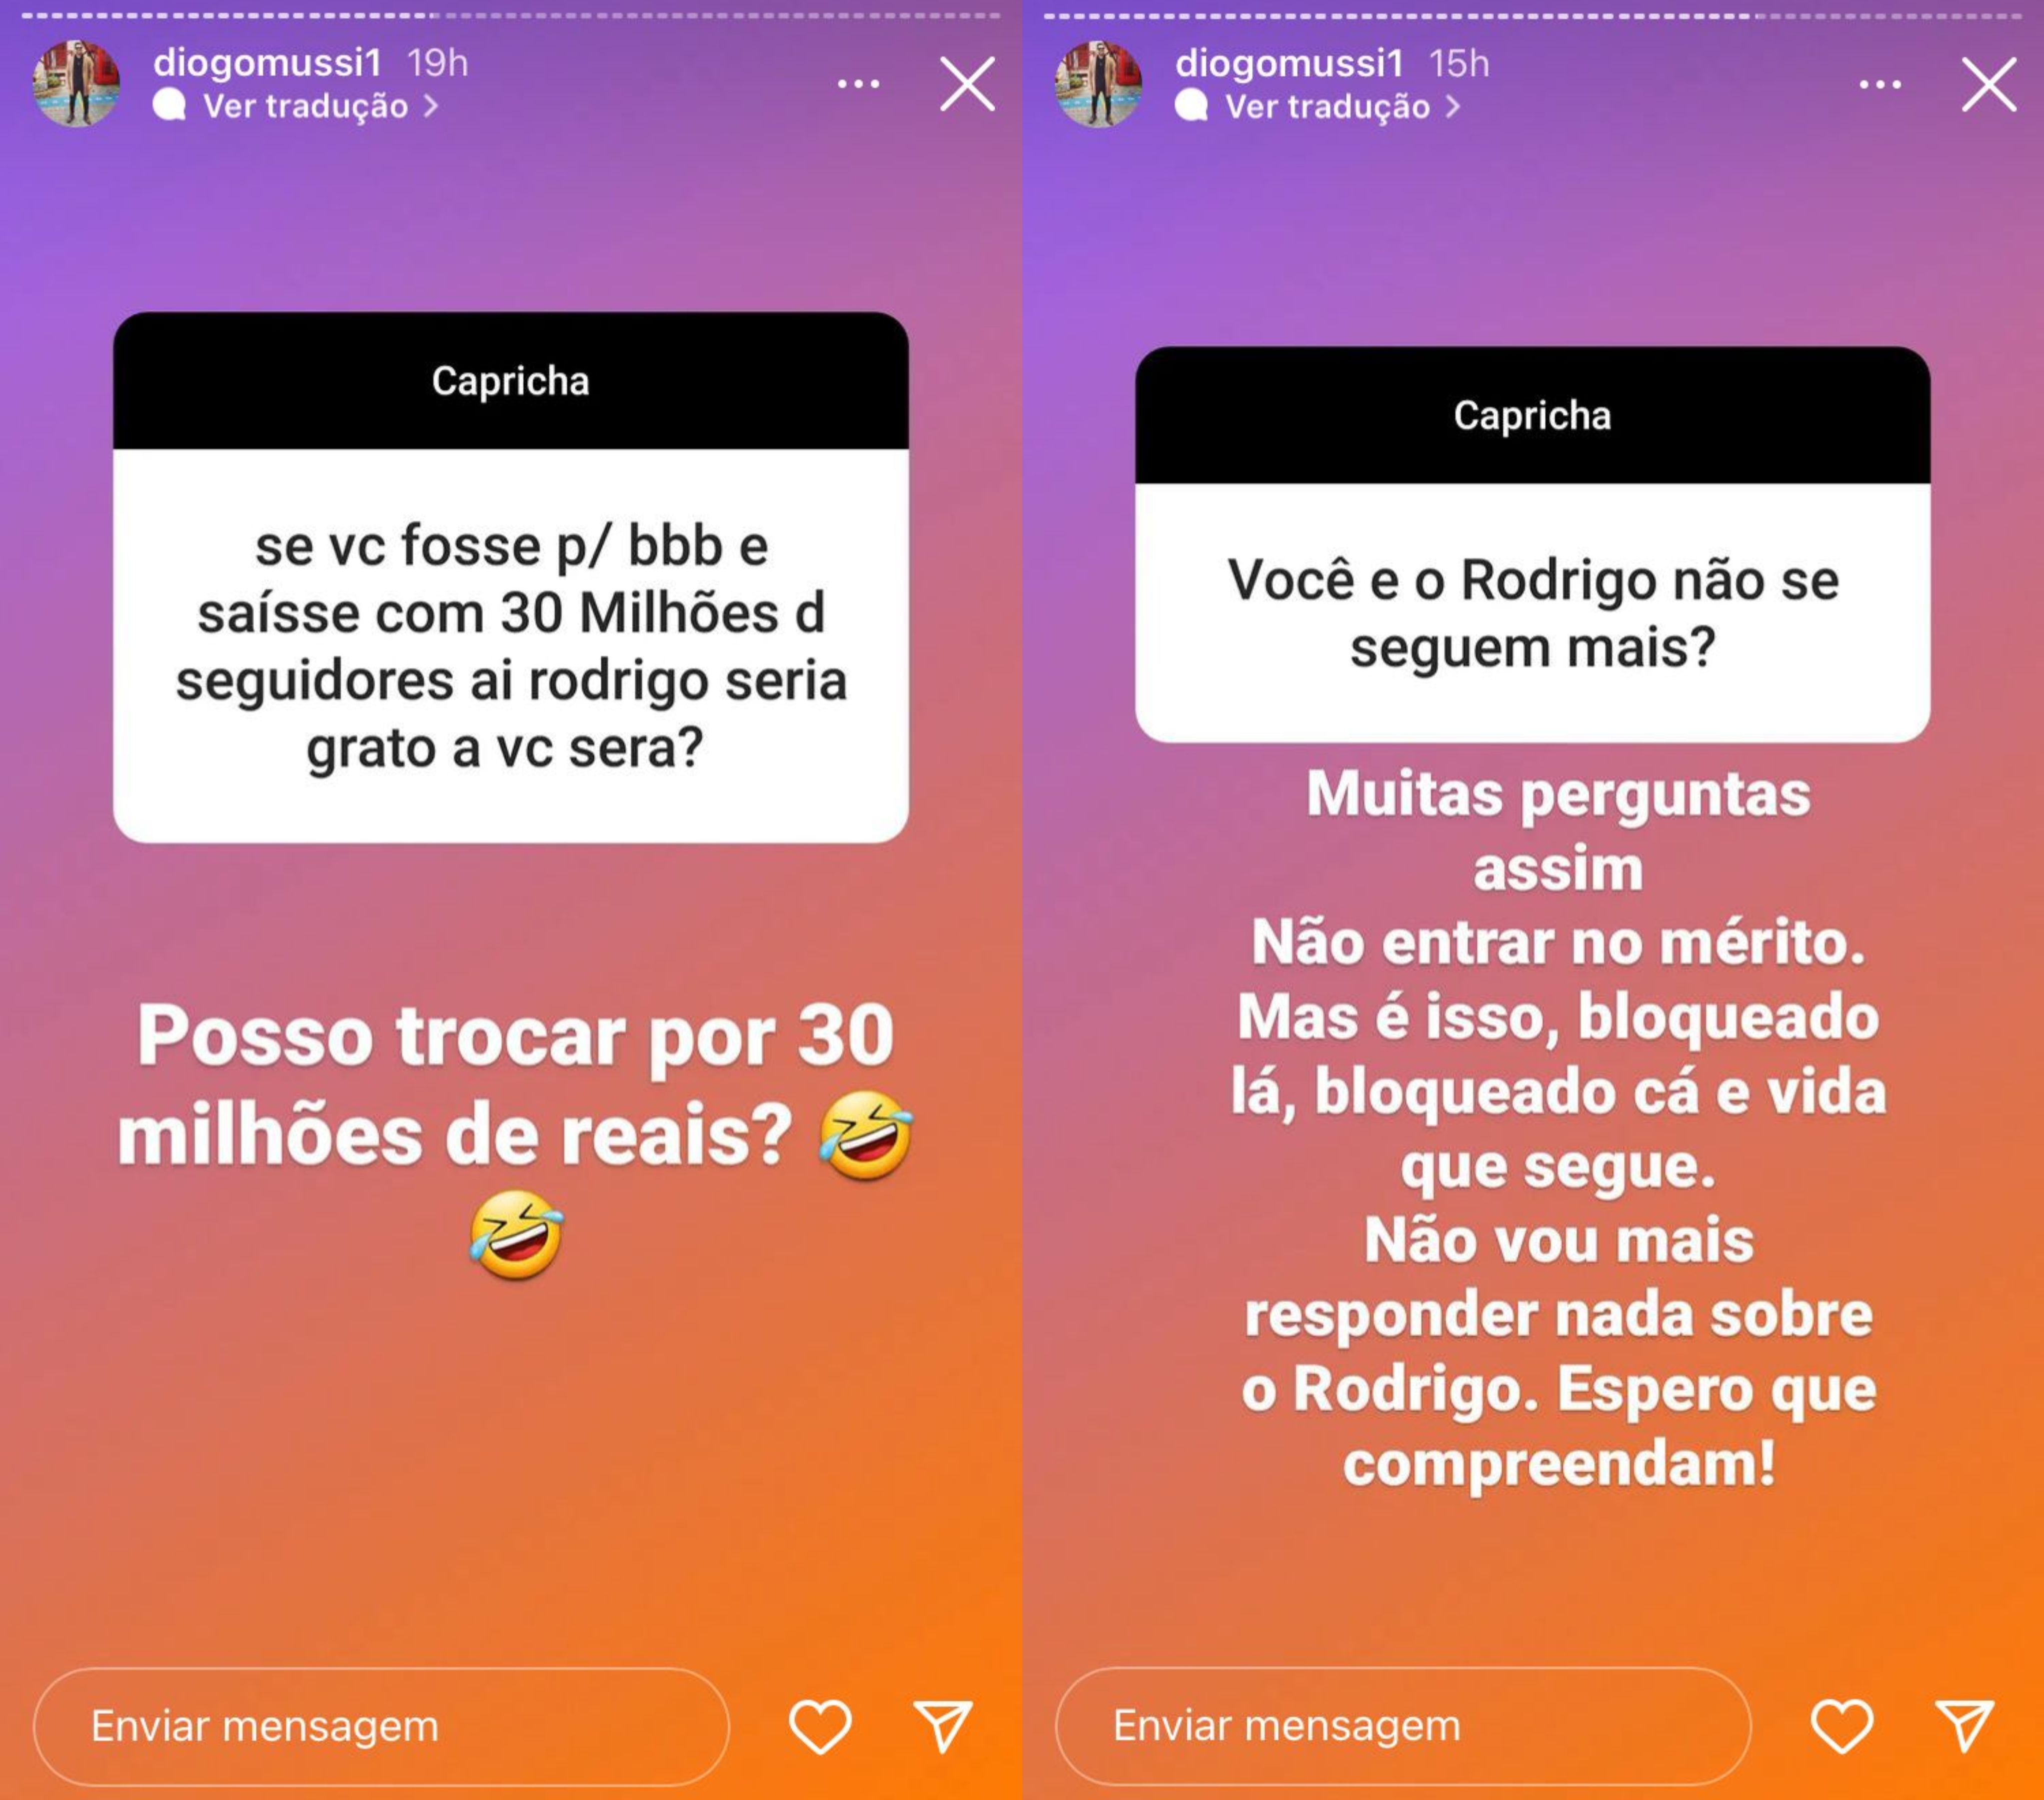 Rodrigo e Diogo Mussi deixaram de se seguir no Instagram - Reprodução/Instagram